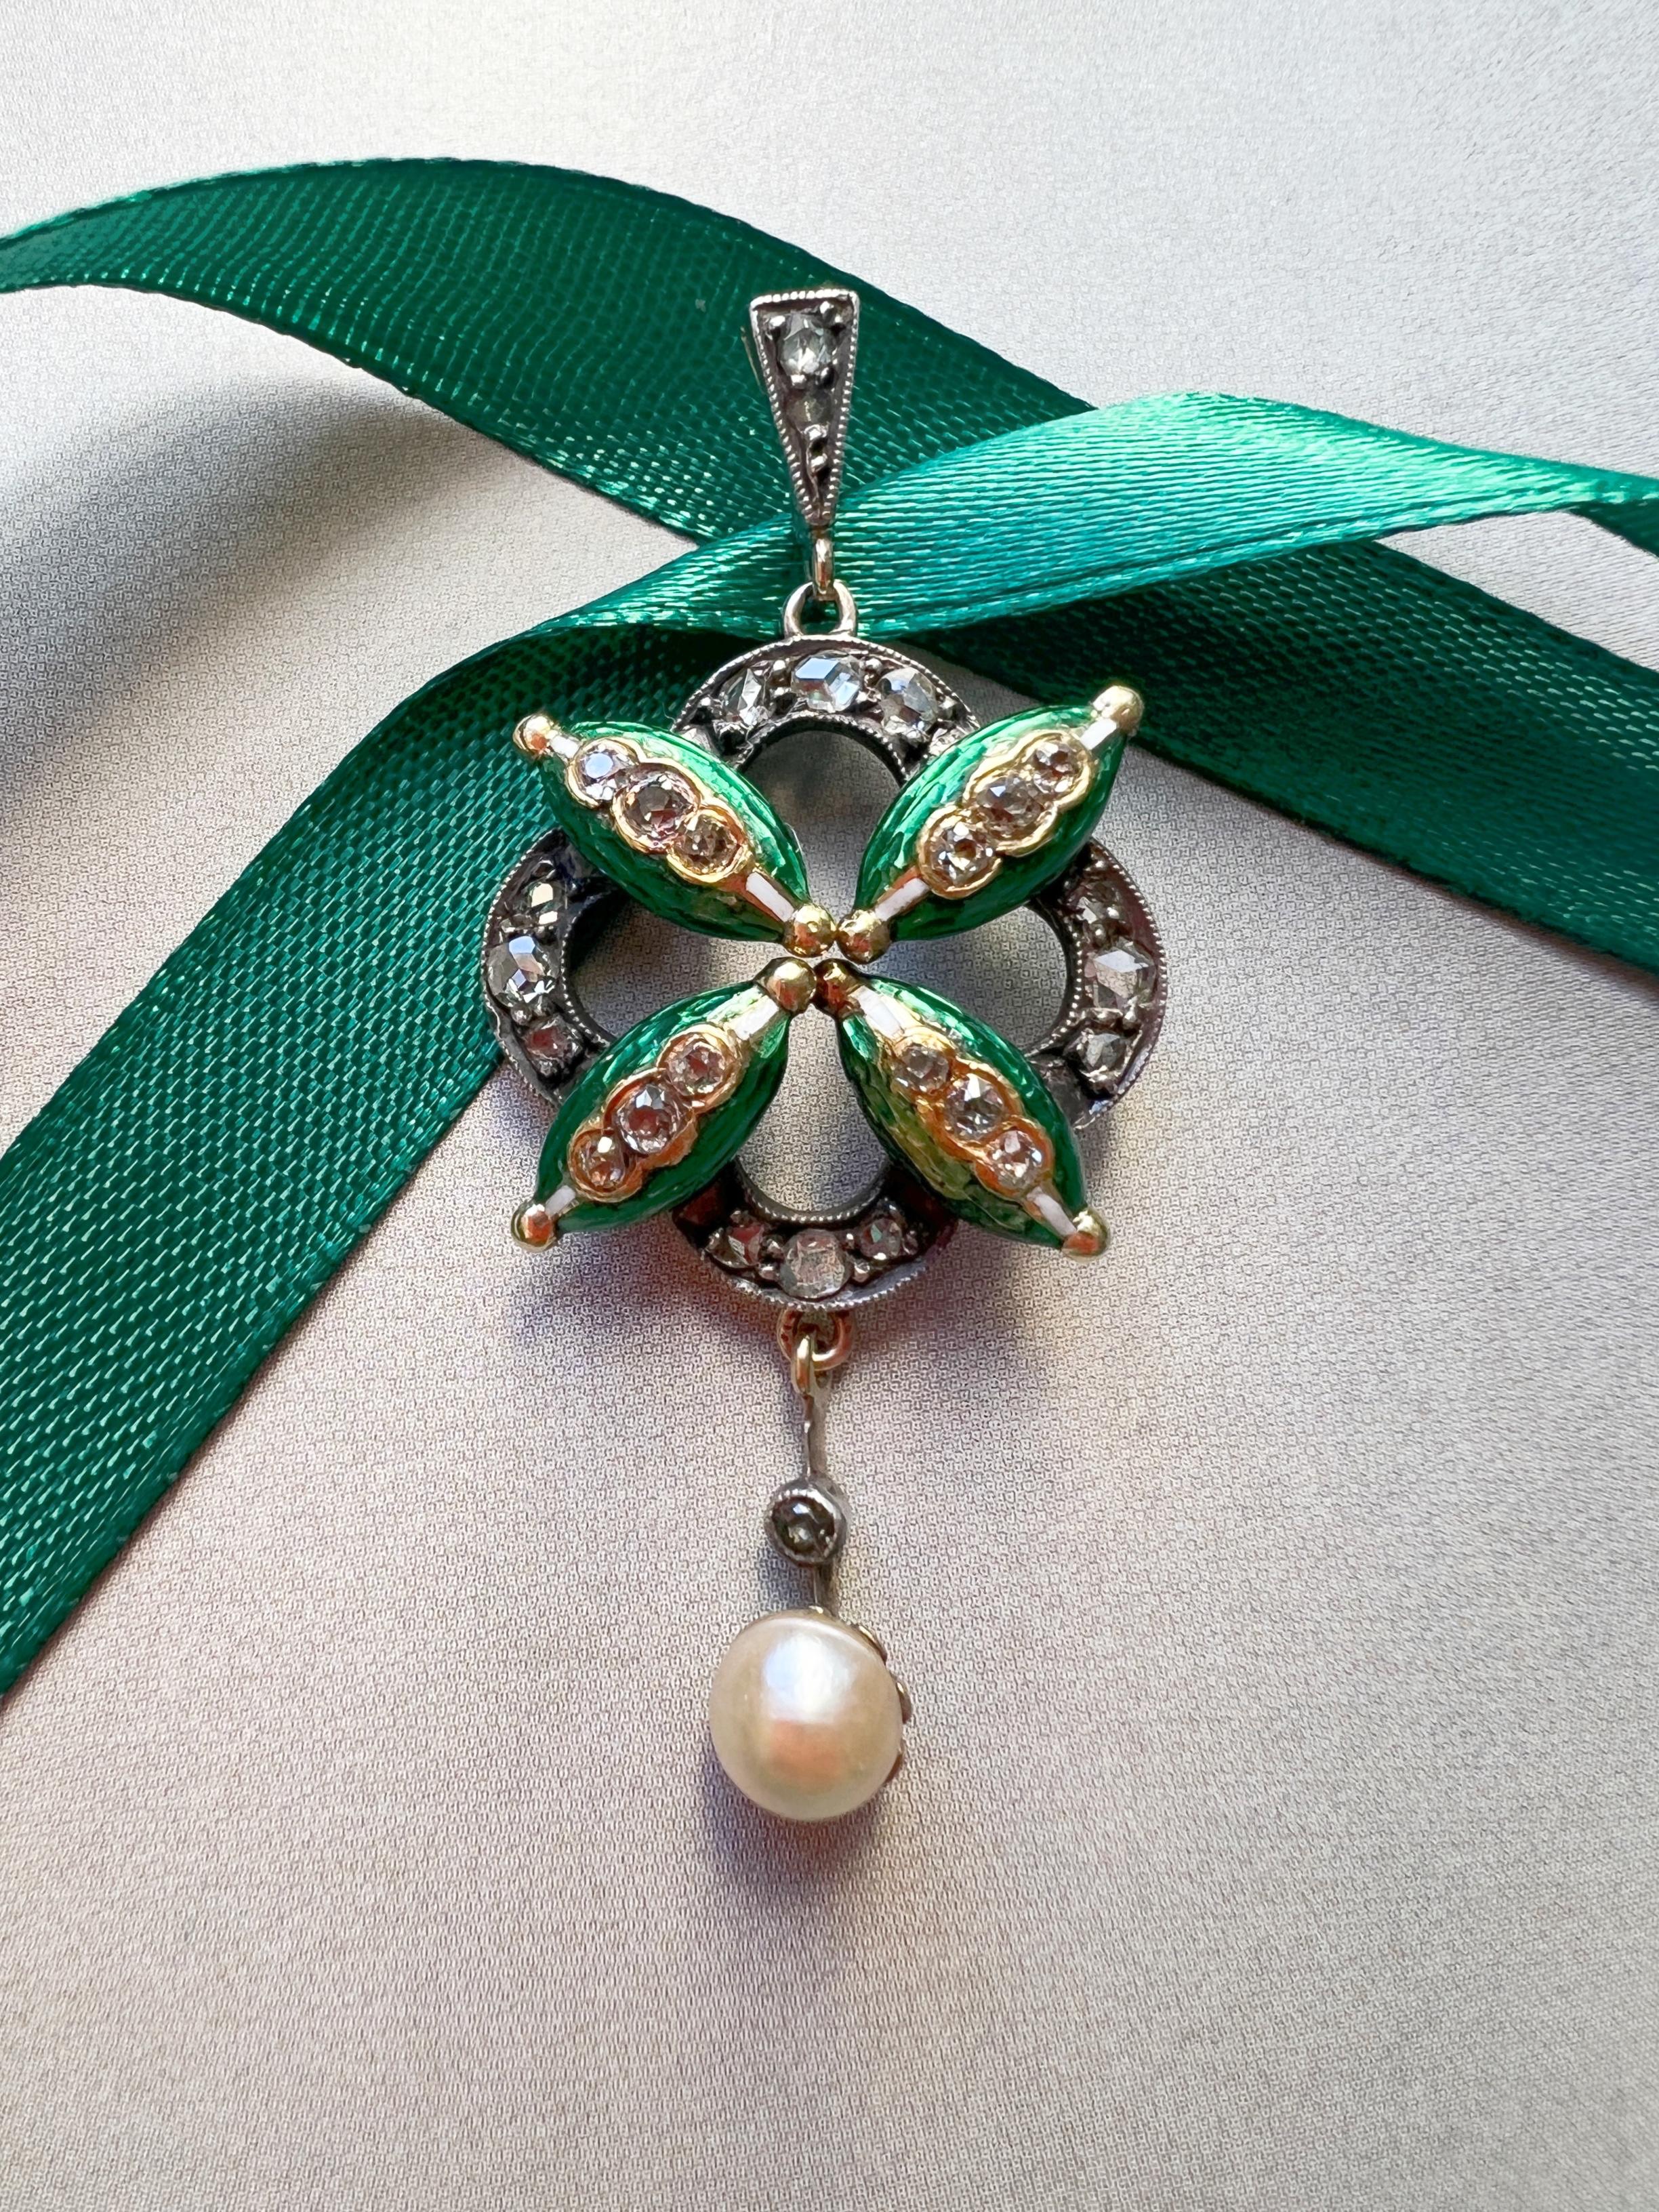 Vente d'un délicat pendentif en diamant et perle, présentant un magnifique motif floral. Le pendentif est daté du milieu du XIXe siècle, vers les années 1850, l'époque victorienne.

Les quatre feuilles du centre sont ornées de 12 diamants taillés en